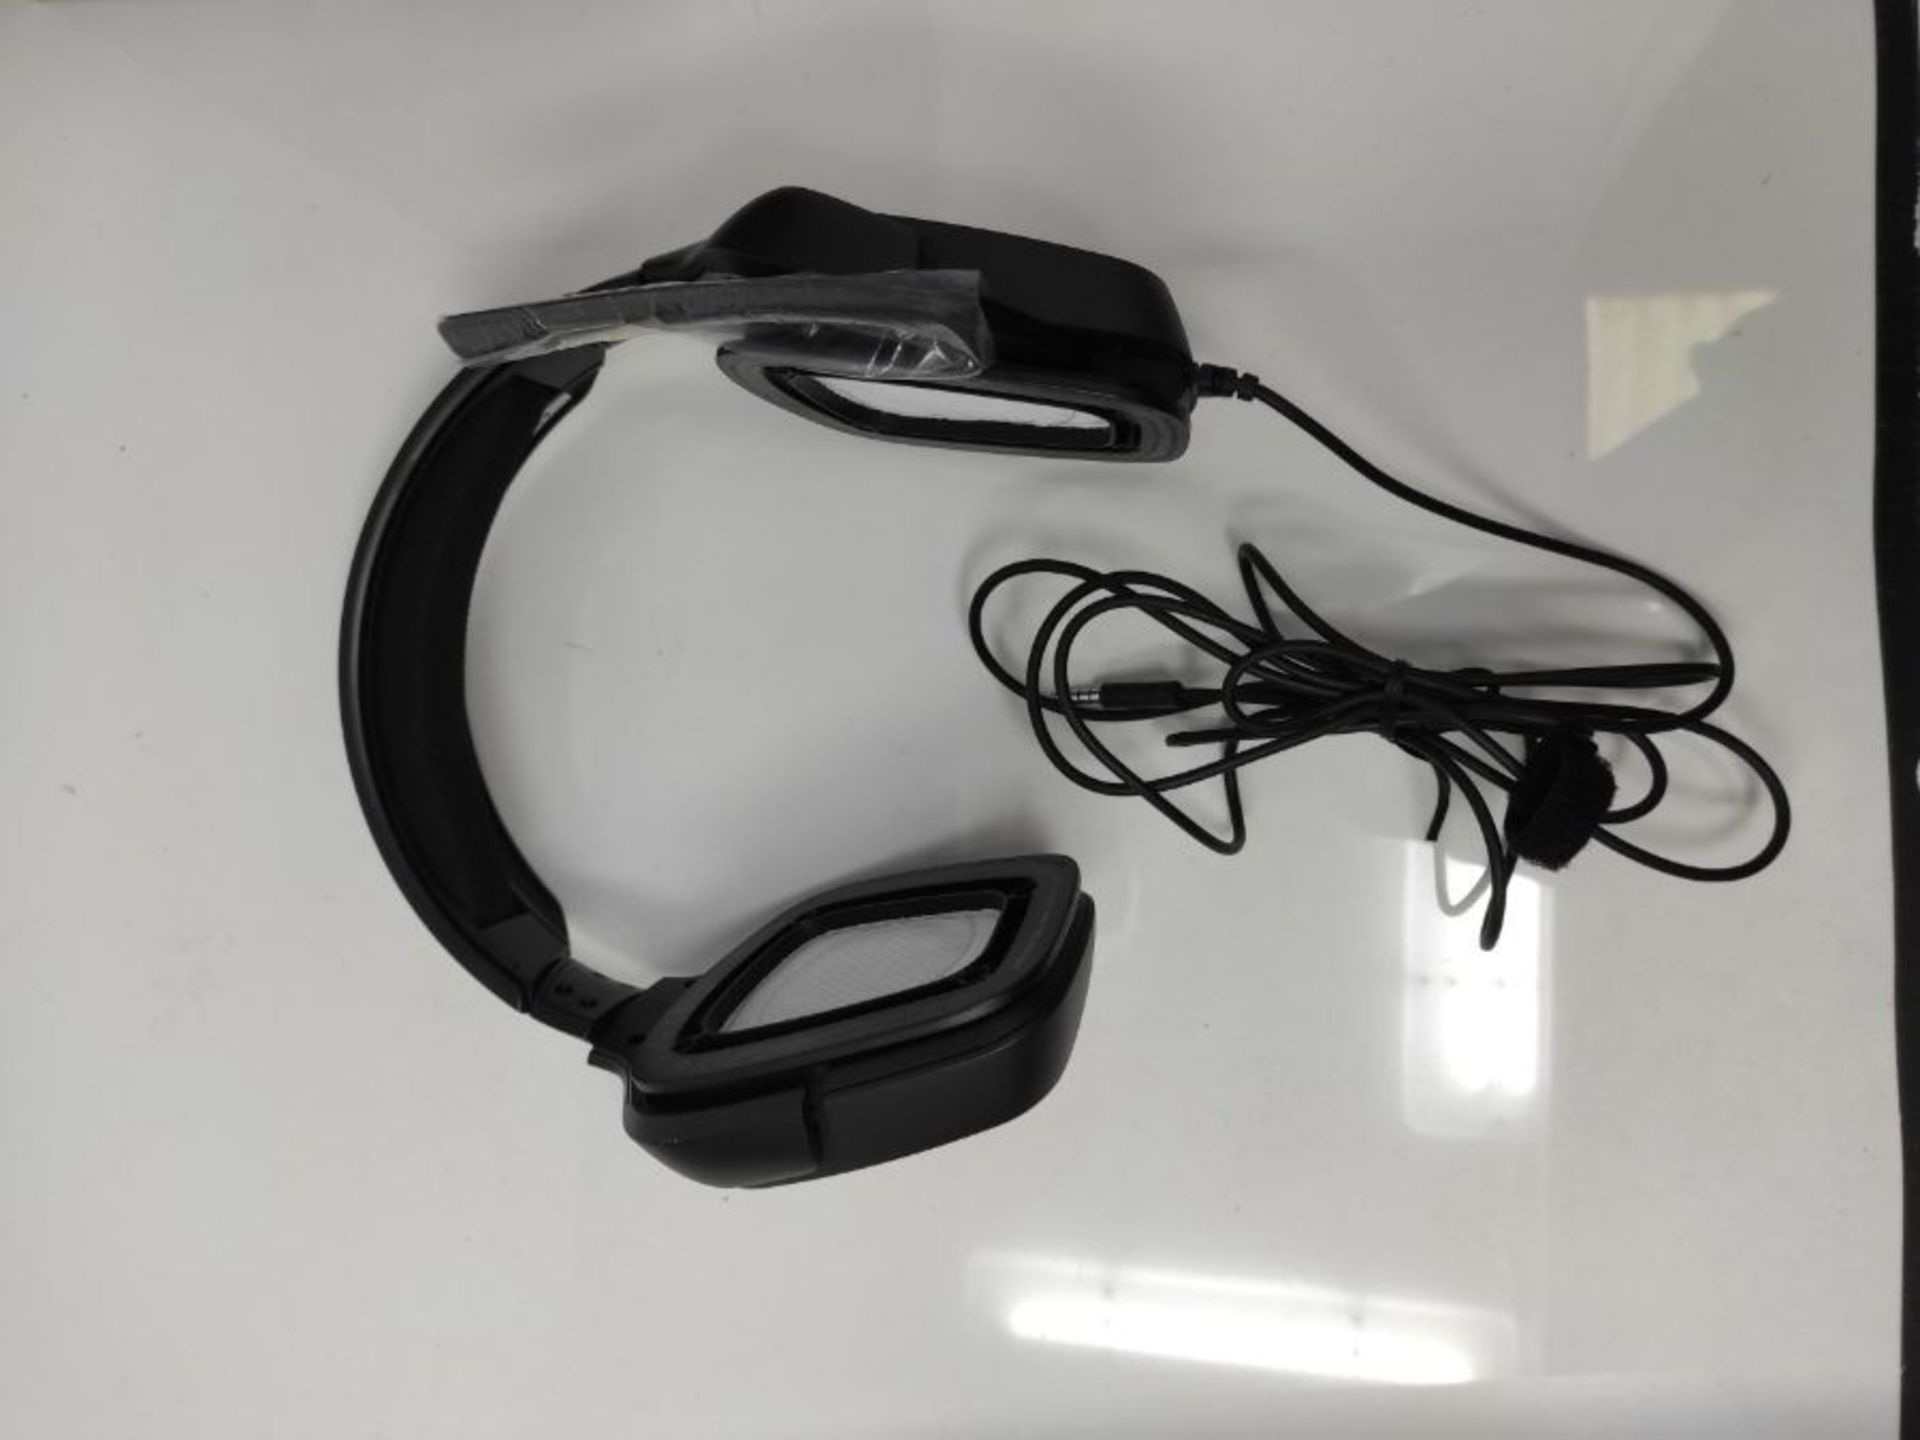 Logitech G332 Special Edition kabelgebundenes Gaming-Headset, 50mm Treiber, Kunstleder - Image 3 of 3